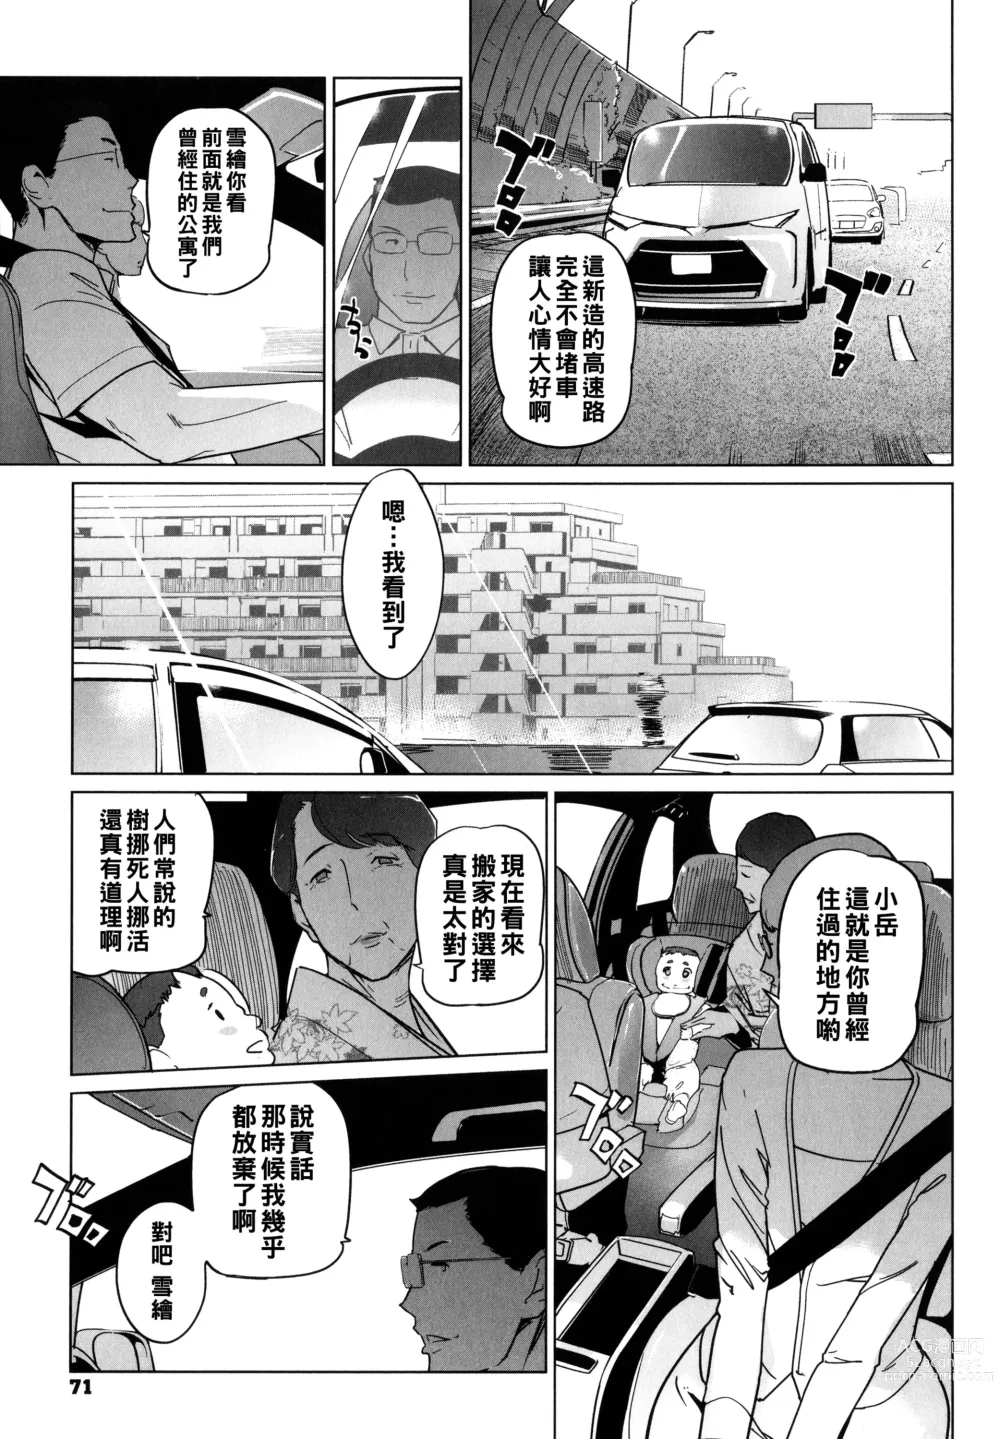 Page 73 of manga Natsu no Su